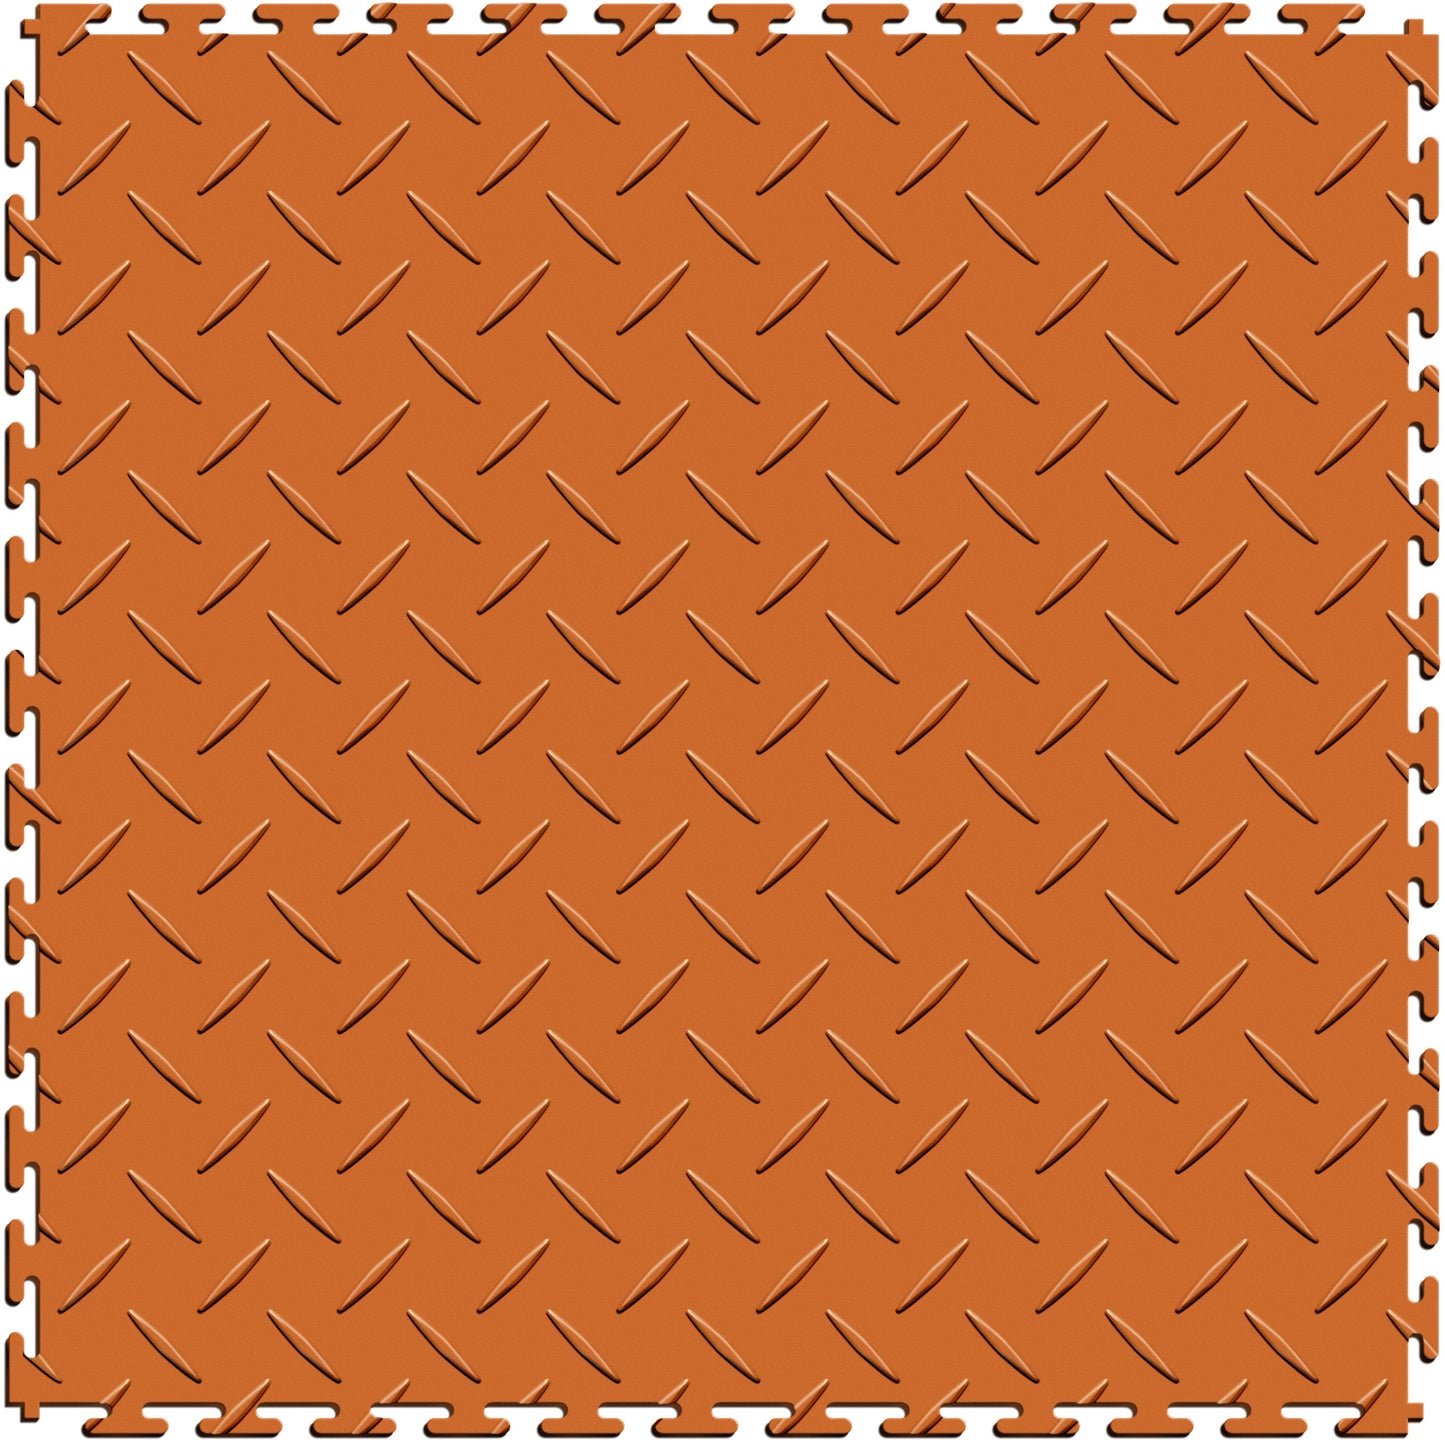 Orange Diamond Plate Tile Case